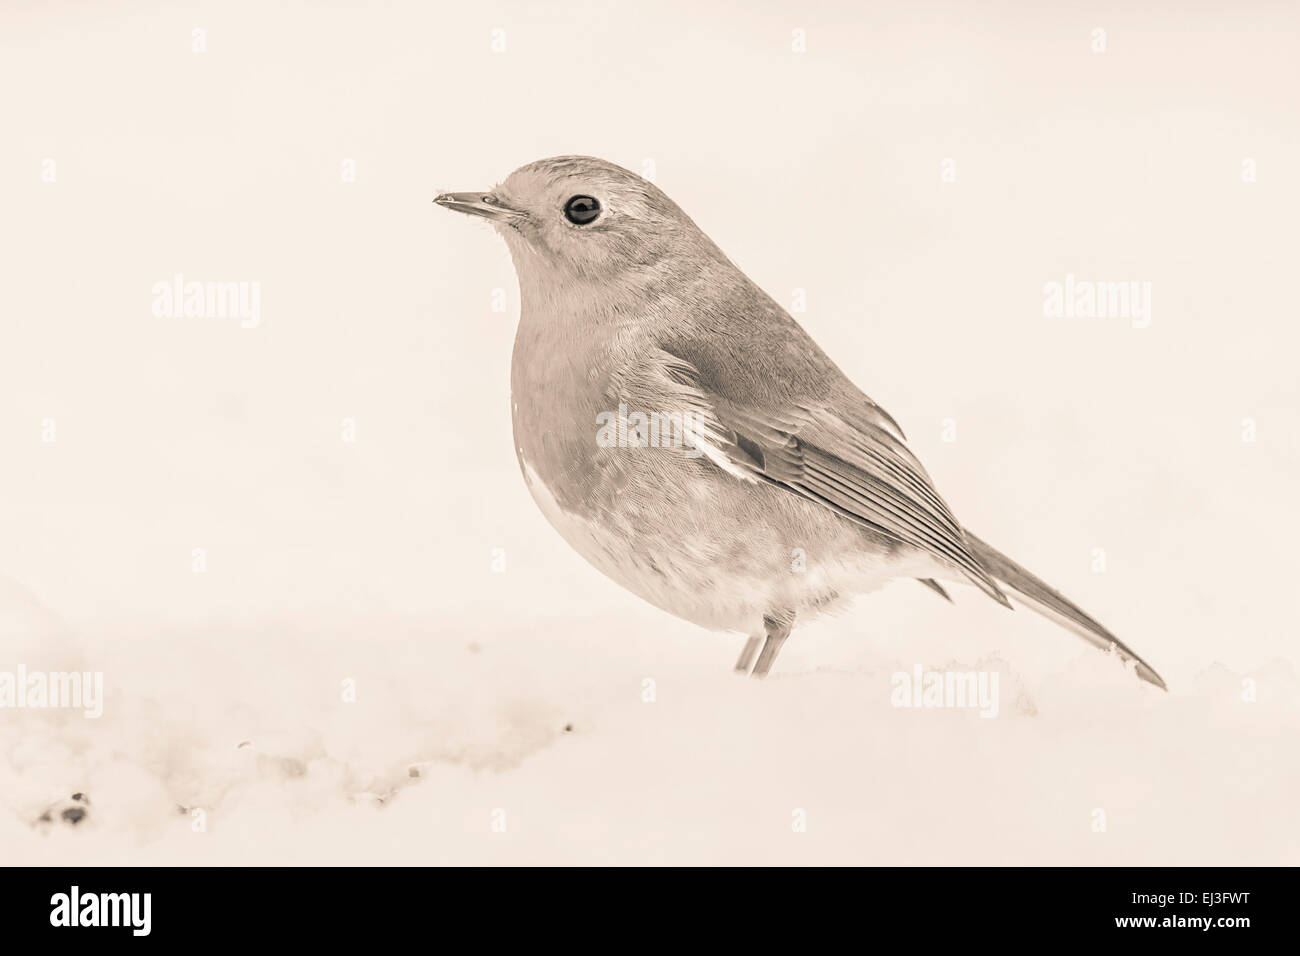 L'image monochrome légèrement teinté de Robin bird dans la neige avec effet vintage duo tone Banque D'Images